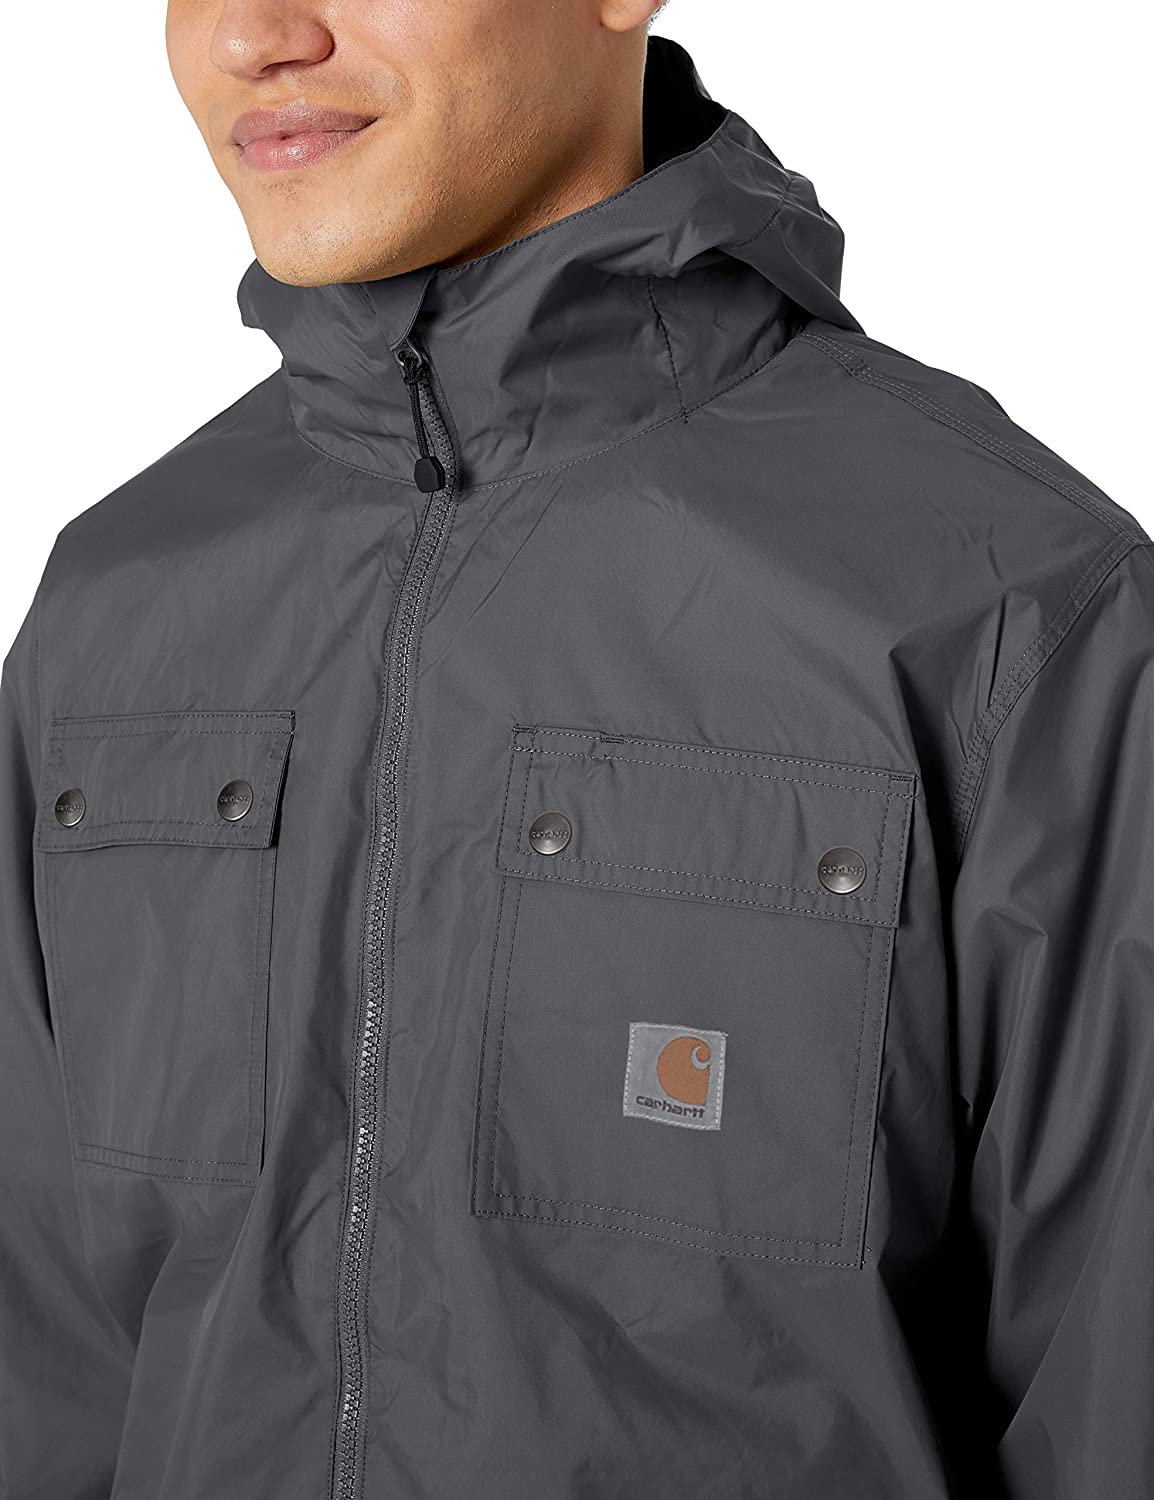 Carhartt Men's Rockford Rain Defender Jacket | eBay